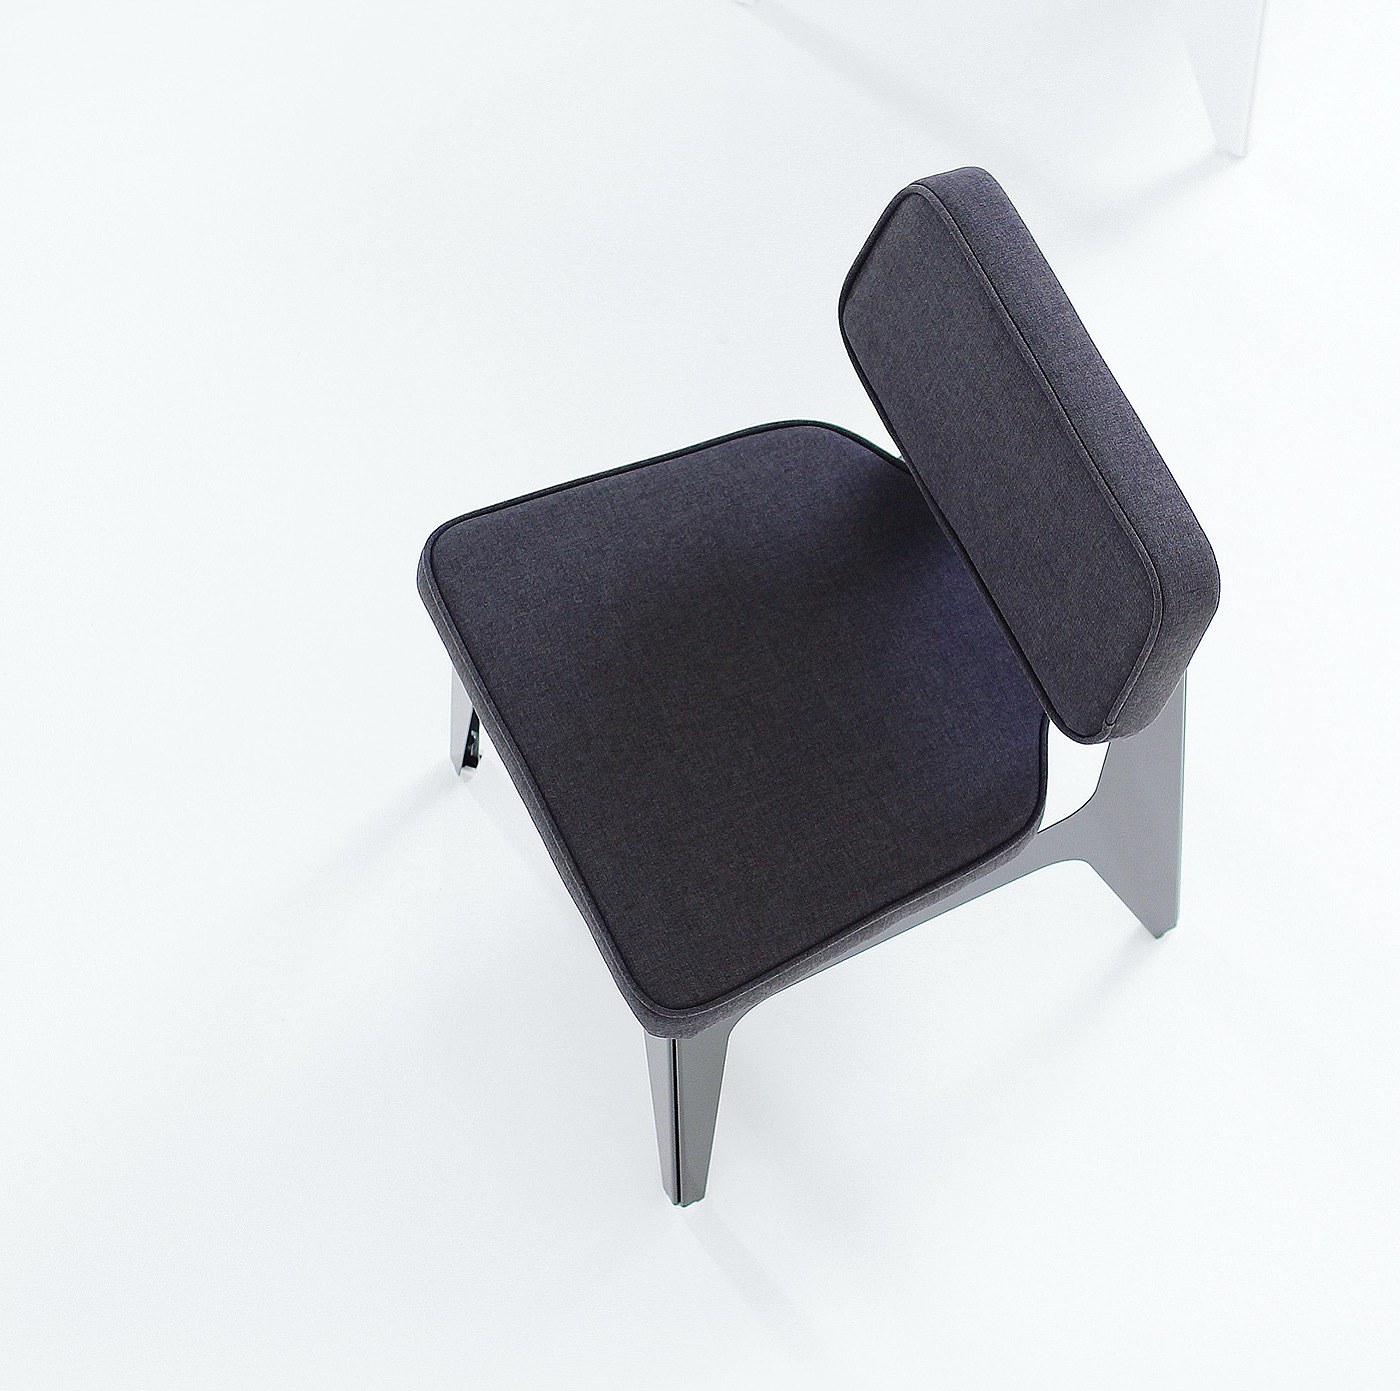 软垫，螺丝，薄片金属，灰色，白色，黑色，椅子，OULA Chair，